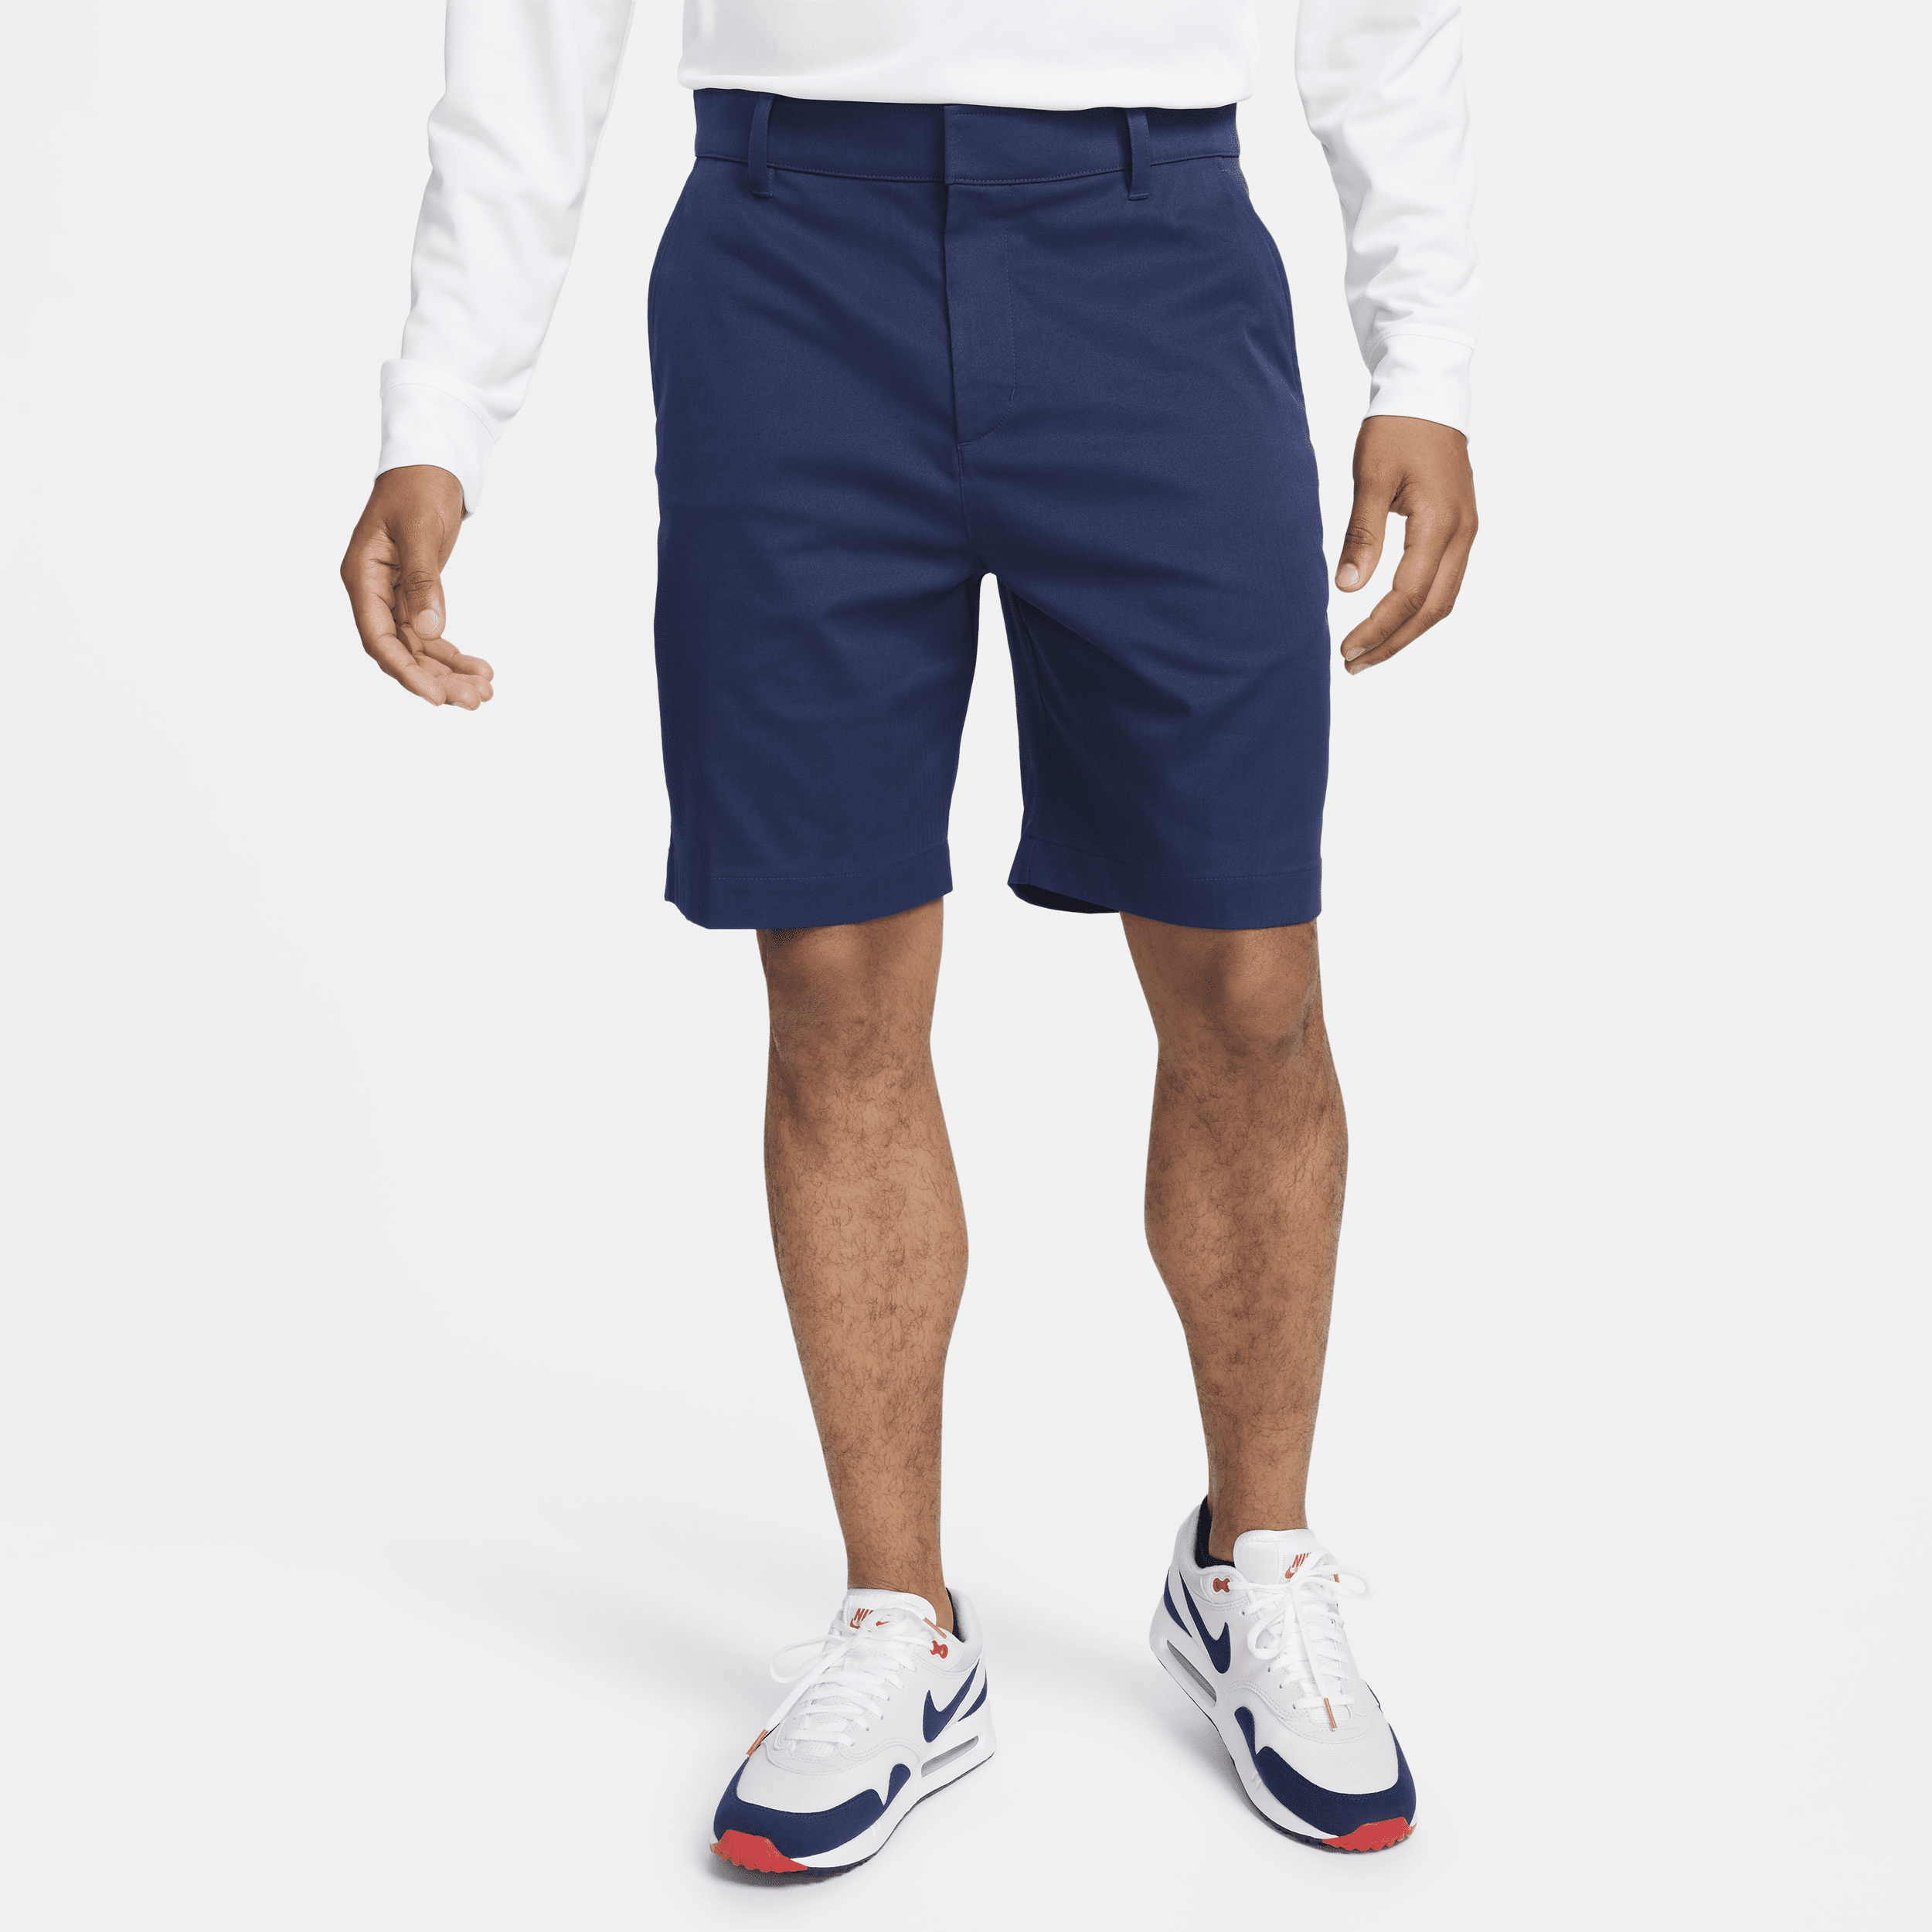 Shorts chino da golf 20 cm Nike Tour – Uomo - Blu